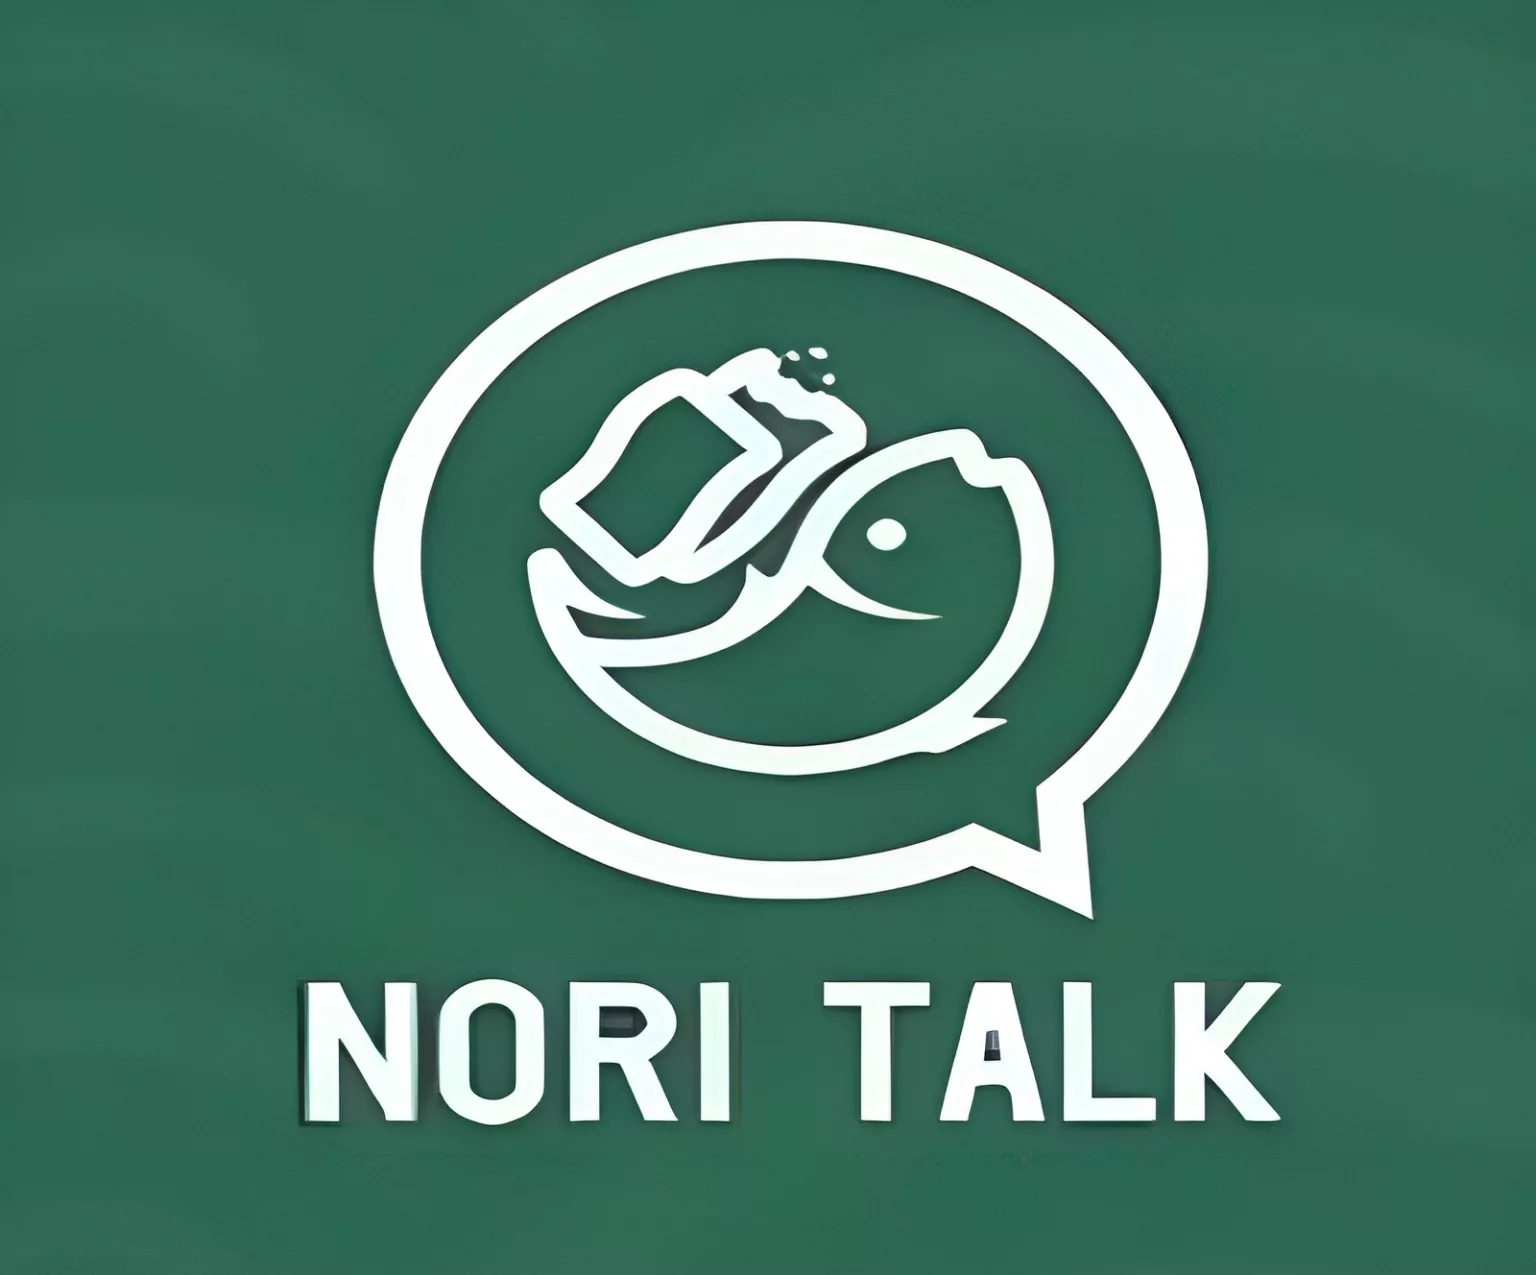 Berikut informasi mengenai loker yang diadakan Nori Talk dengan penempatan di Bandung.